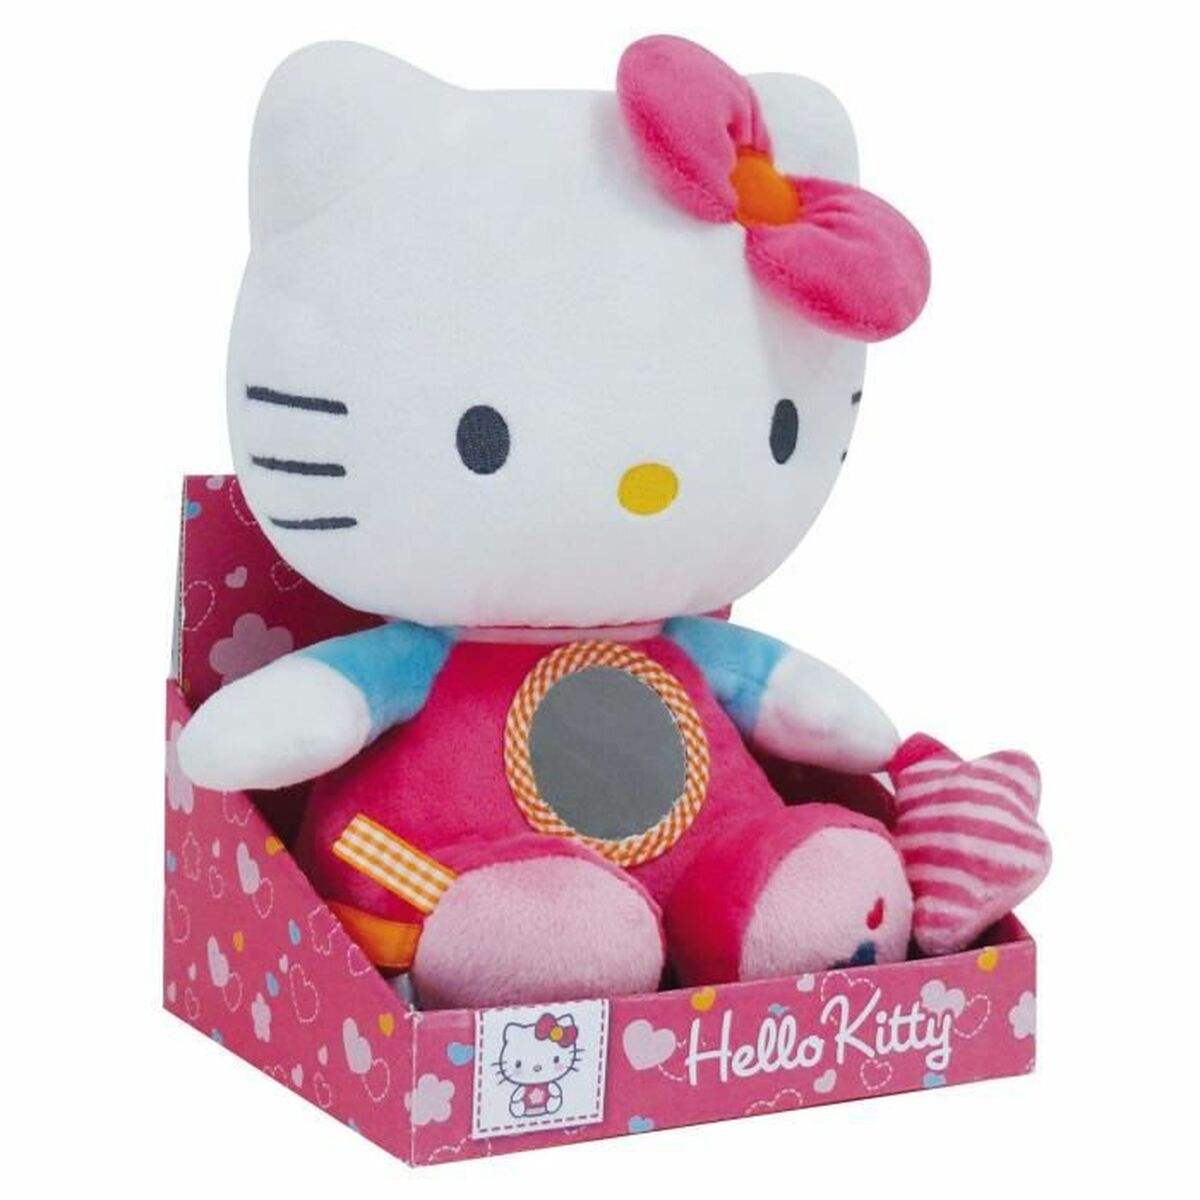 Plüschtier Jemini Hello Kitty Moderne